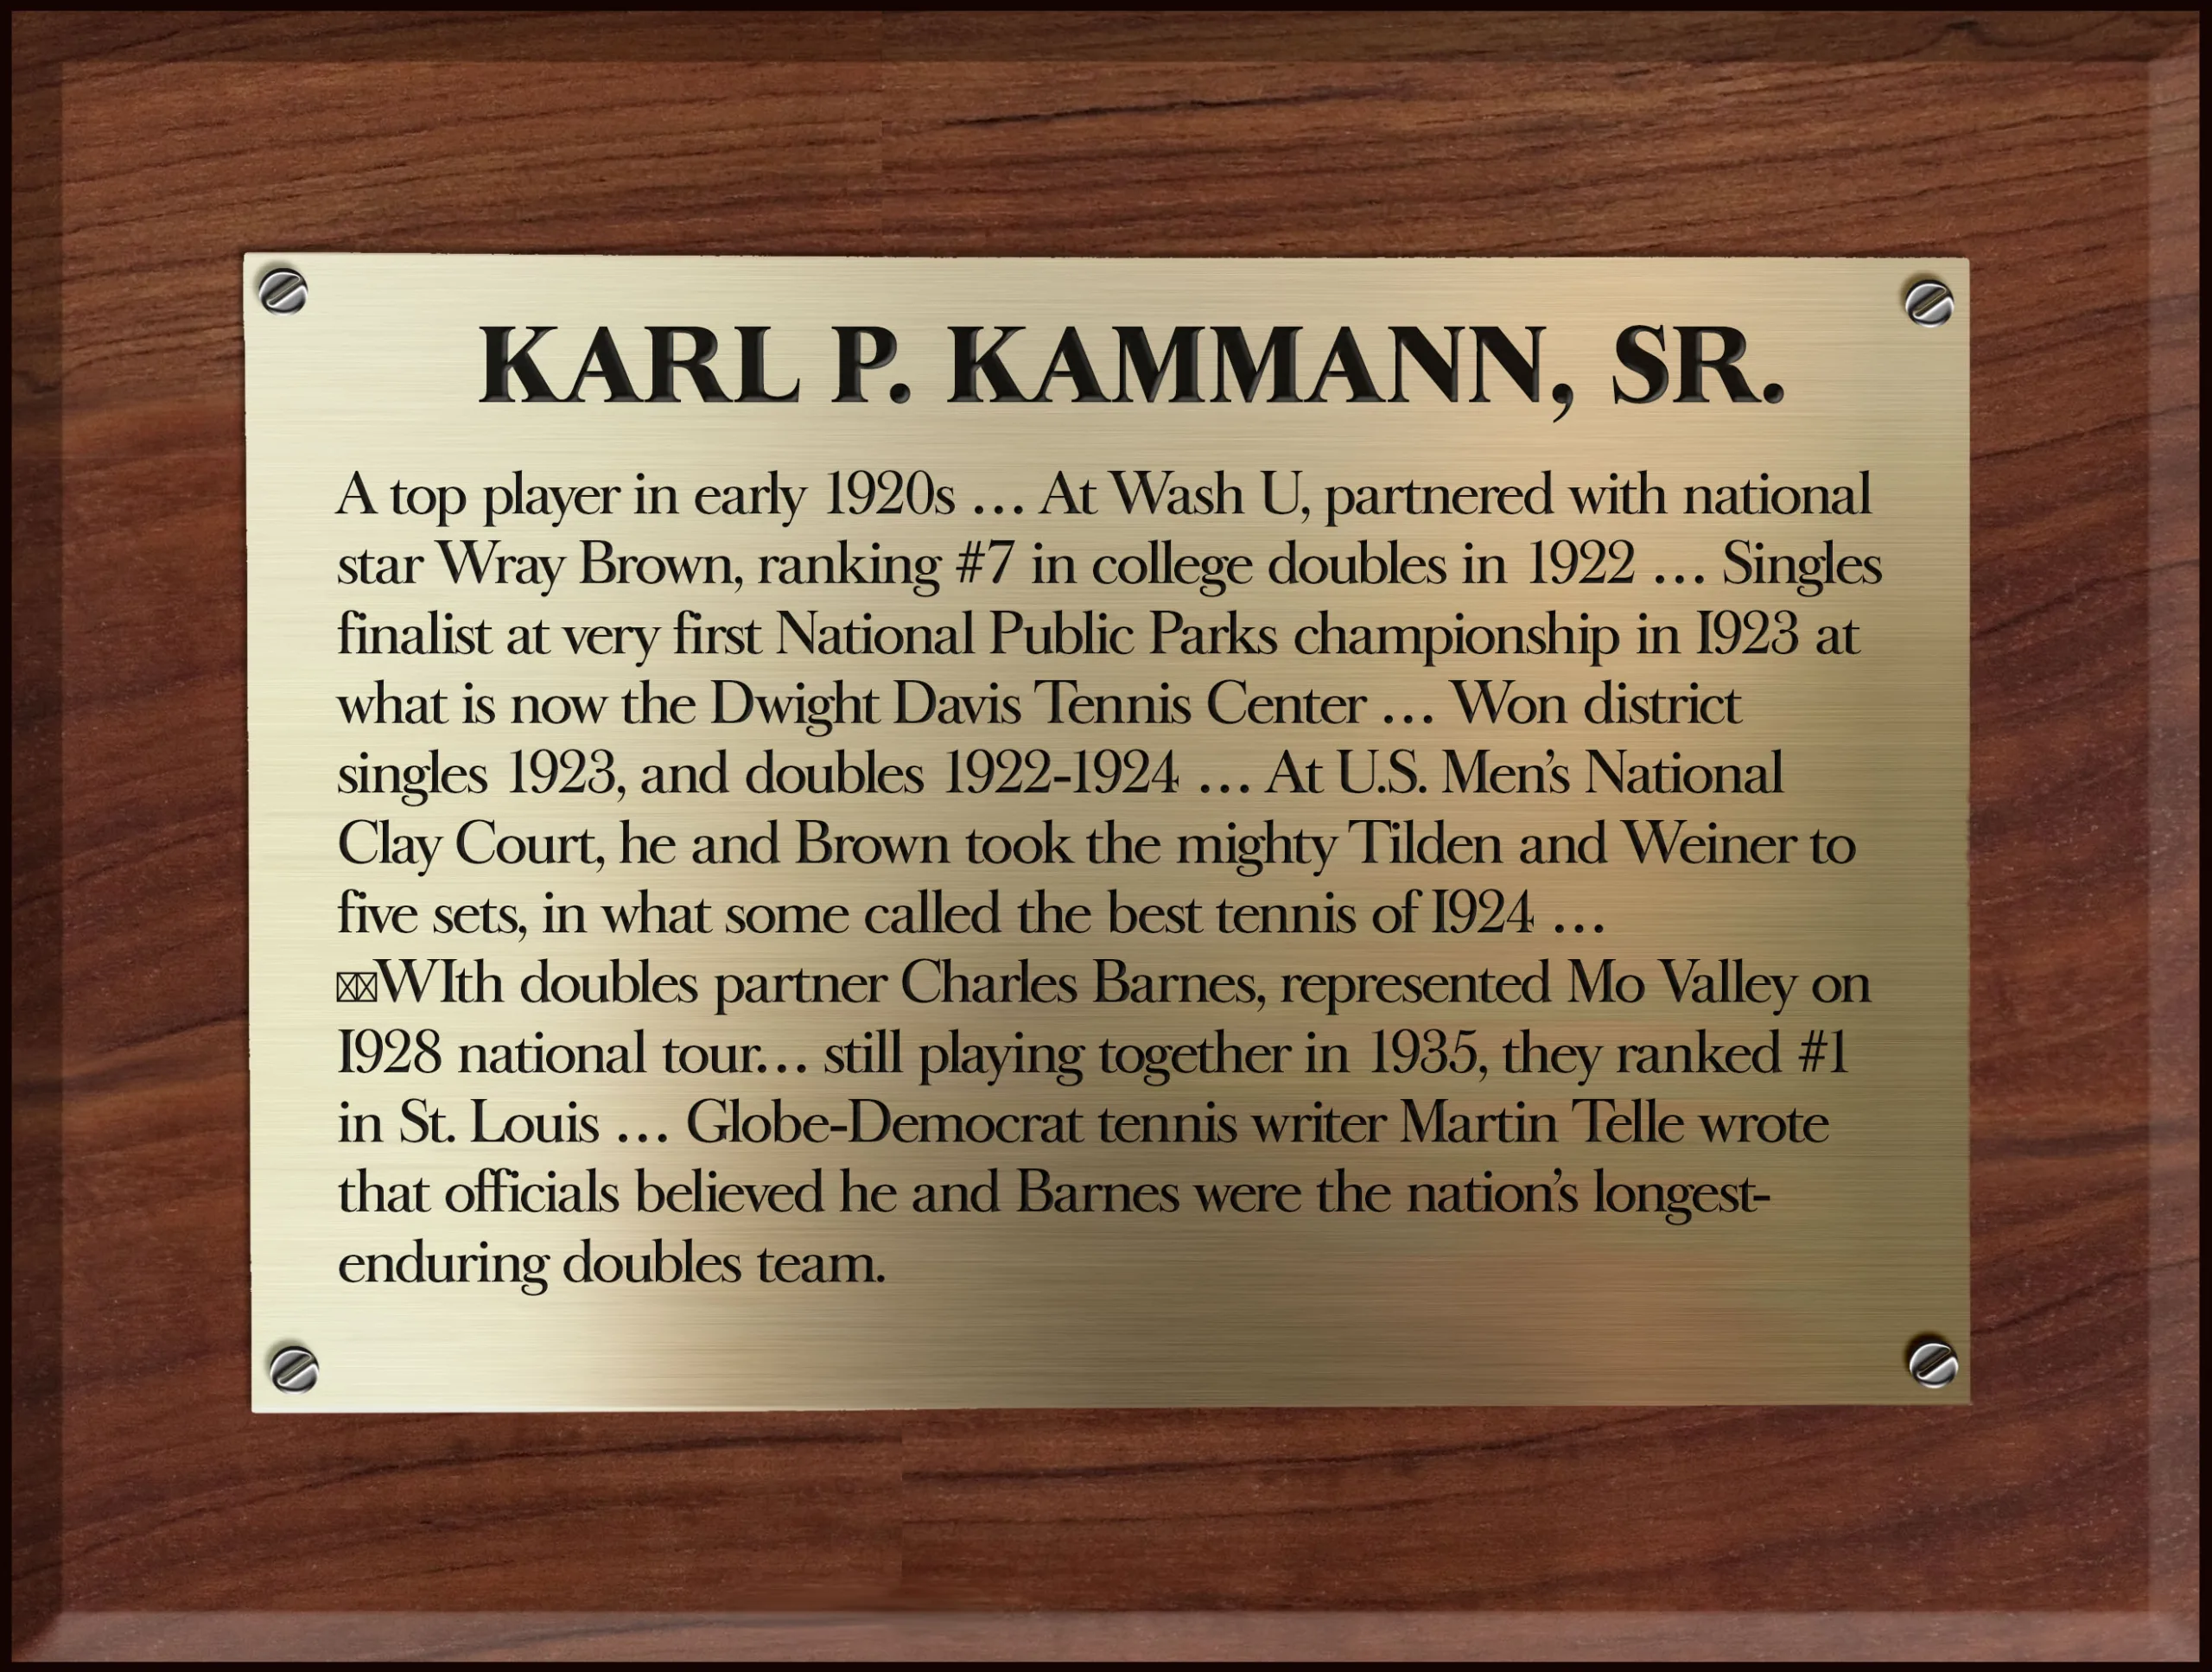 Karl Kamann